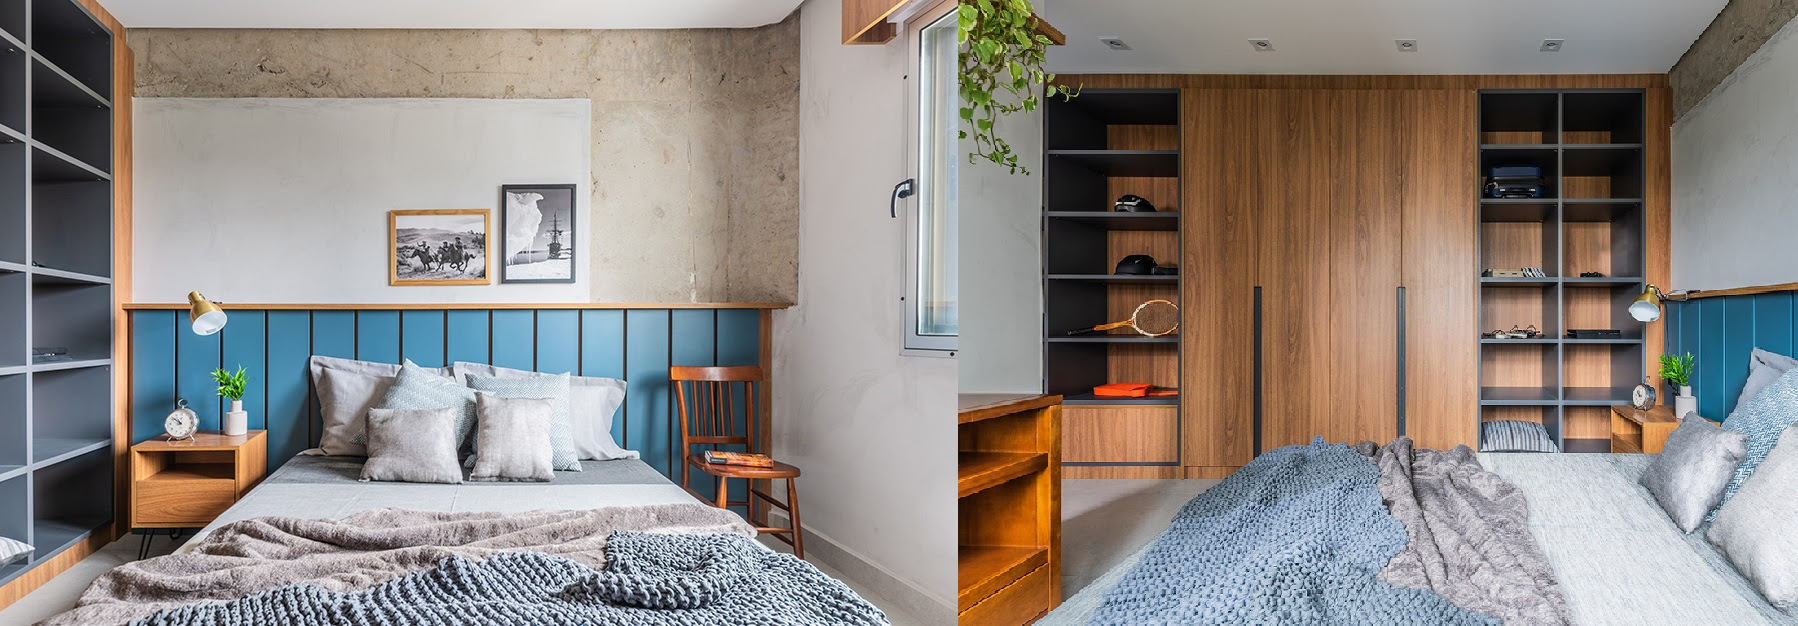 Aconchego e praticidade realçam a transformação que o arquiteto Pietro Terlizzi promoveu no dormitório do morador |Fotos: Guilherme Pucci 